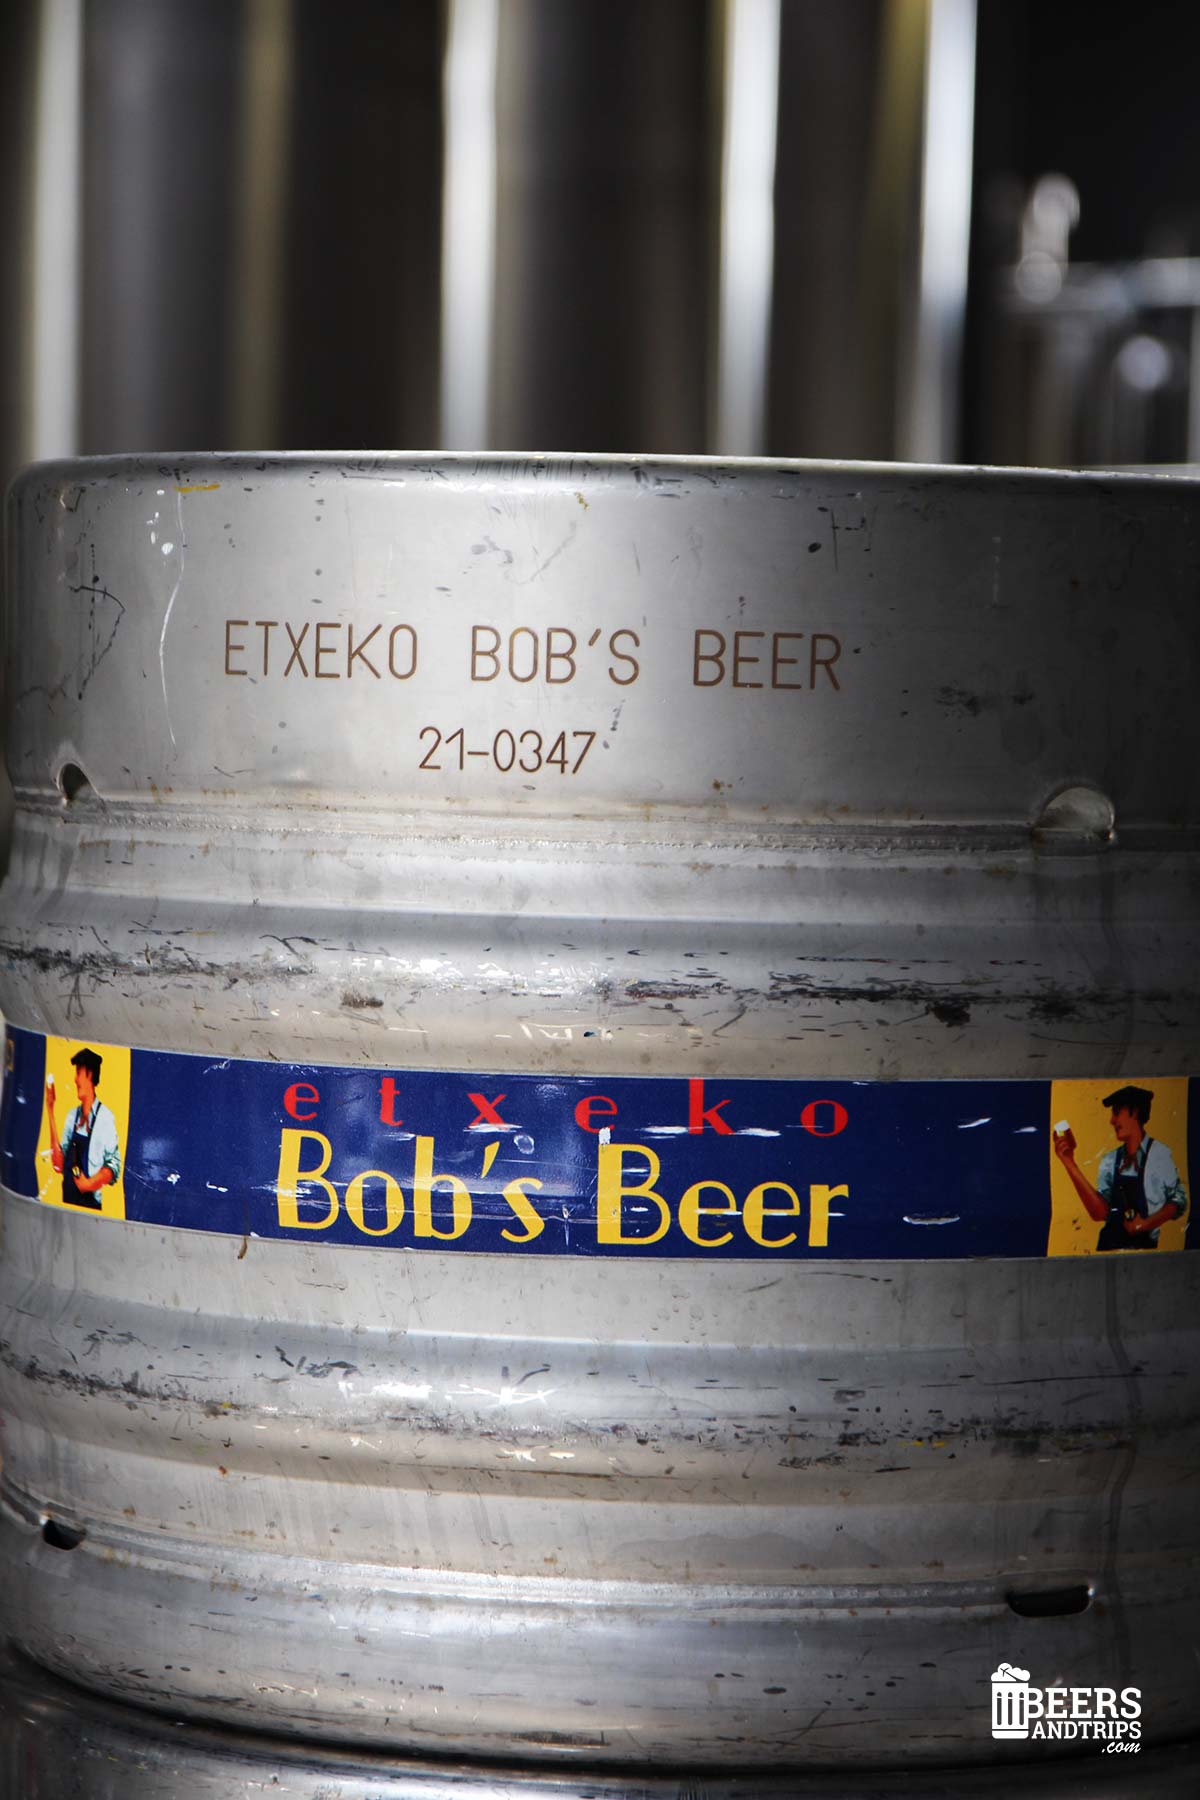 Etxeko Bob's Beer, un clásico de cerveza artesana en el País Vasco Francés